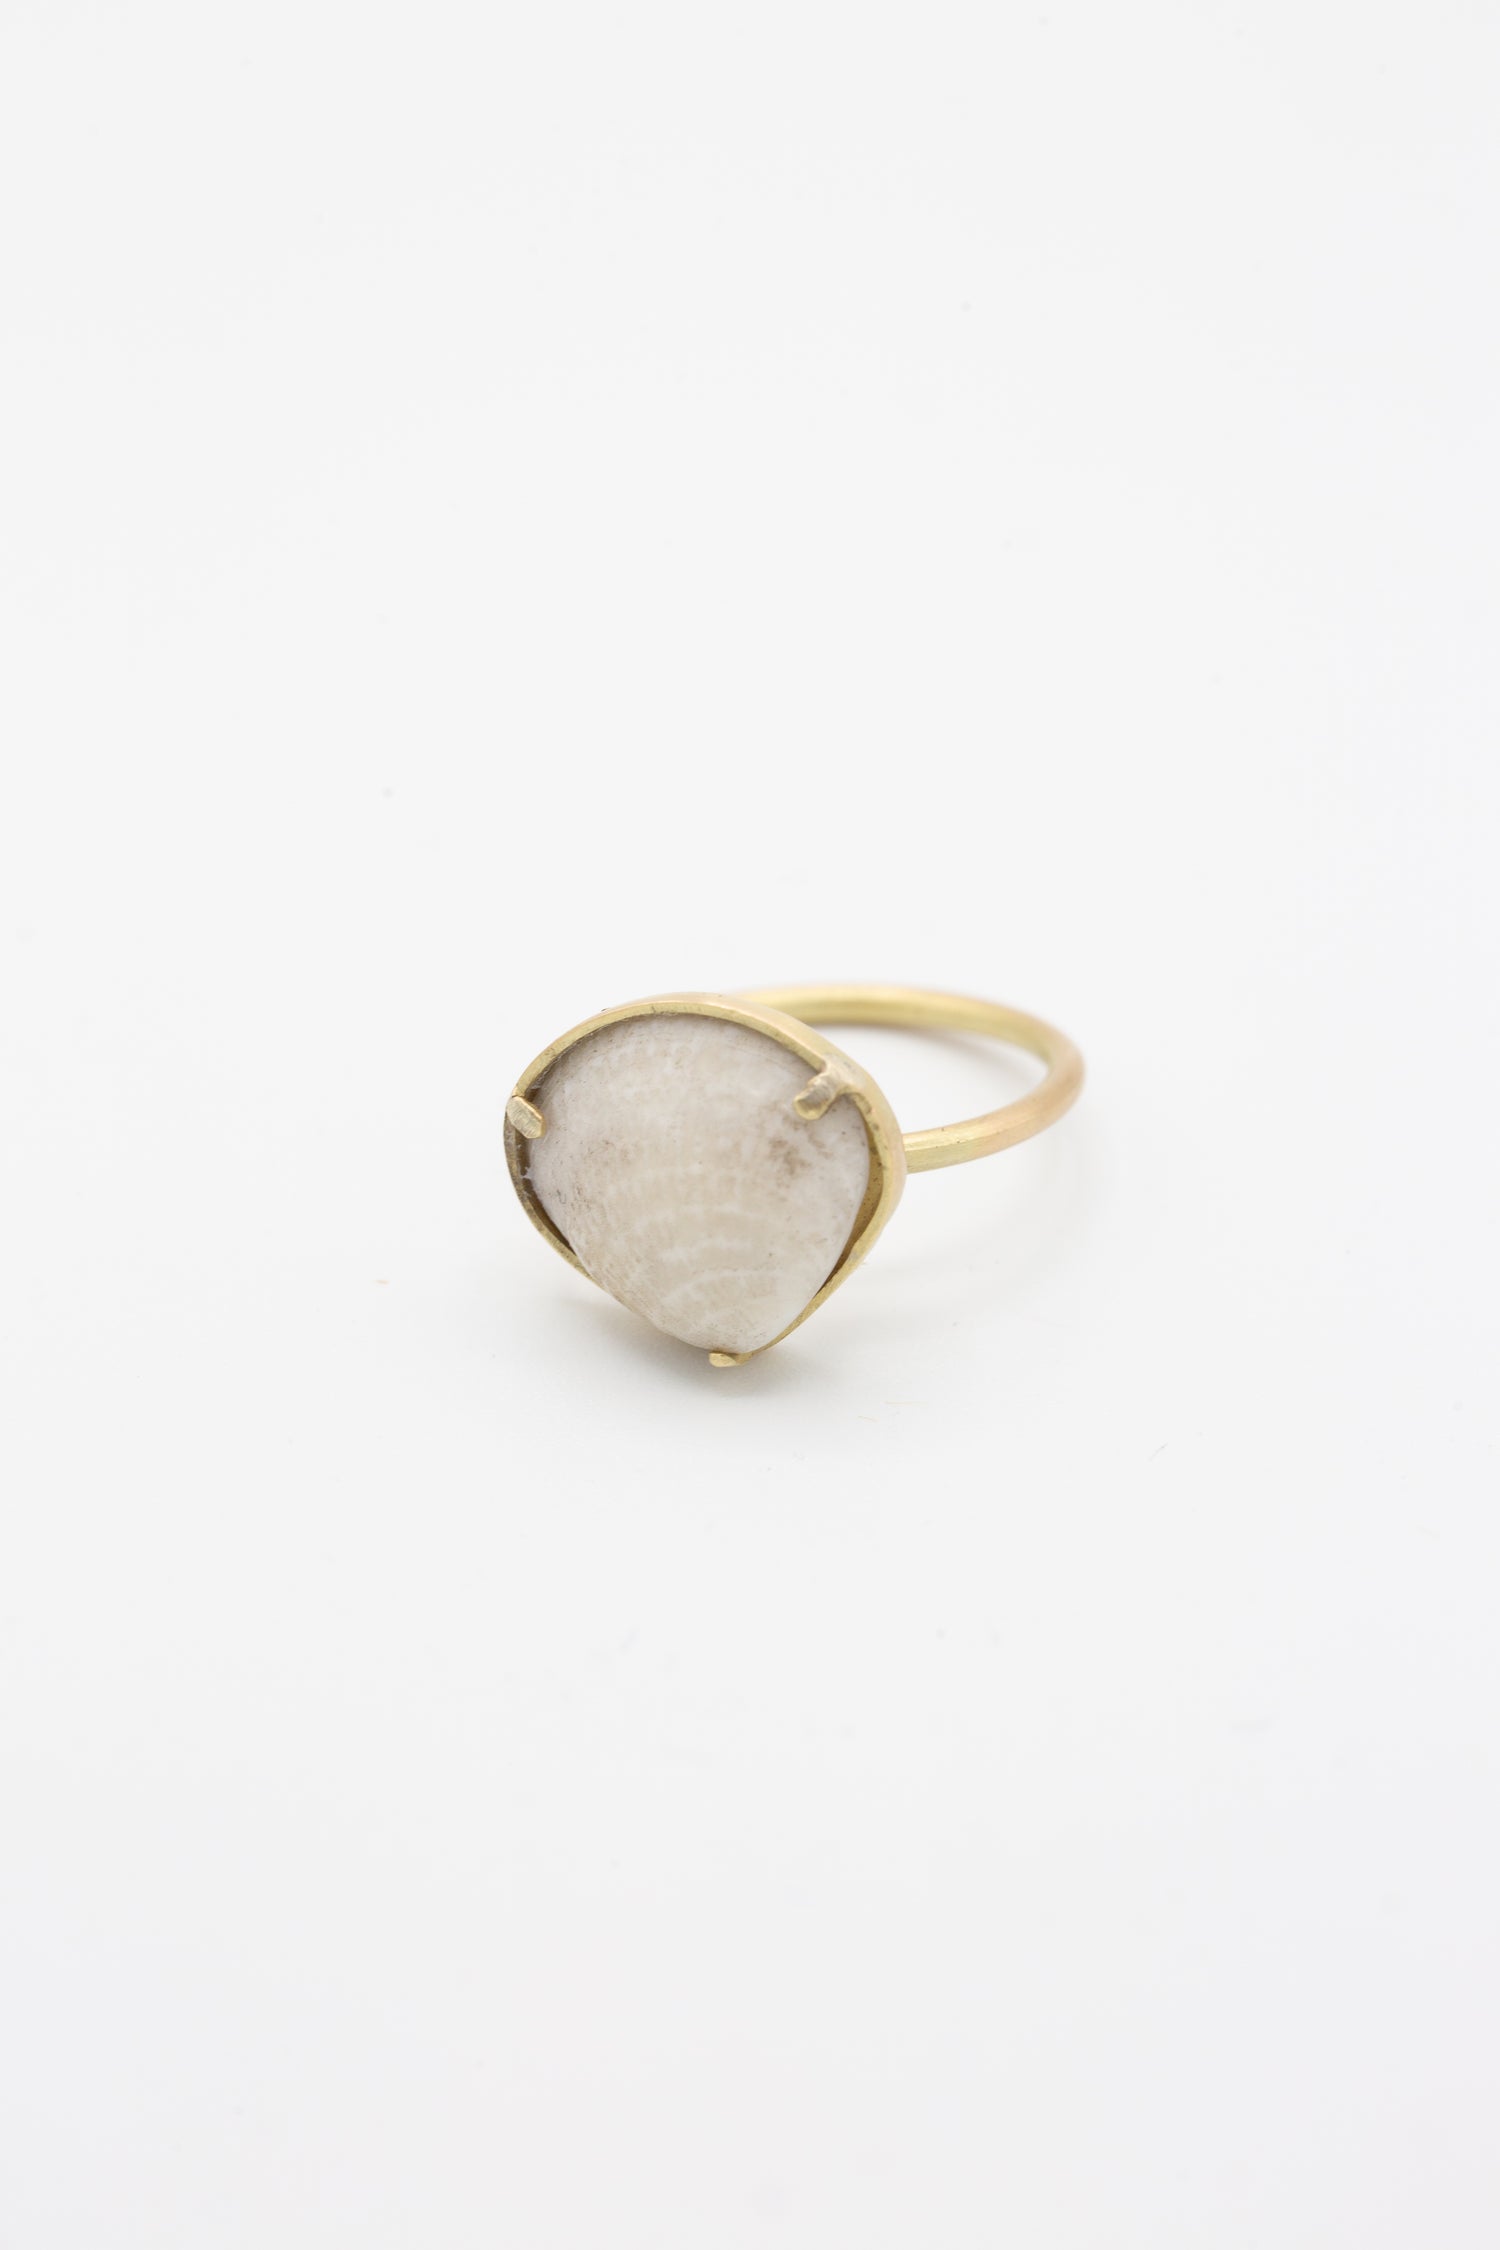 A La Ma r 14K Gold Ring 015 B with a white quartz stone.